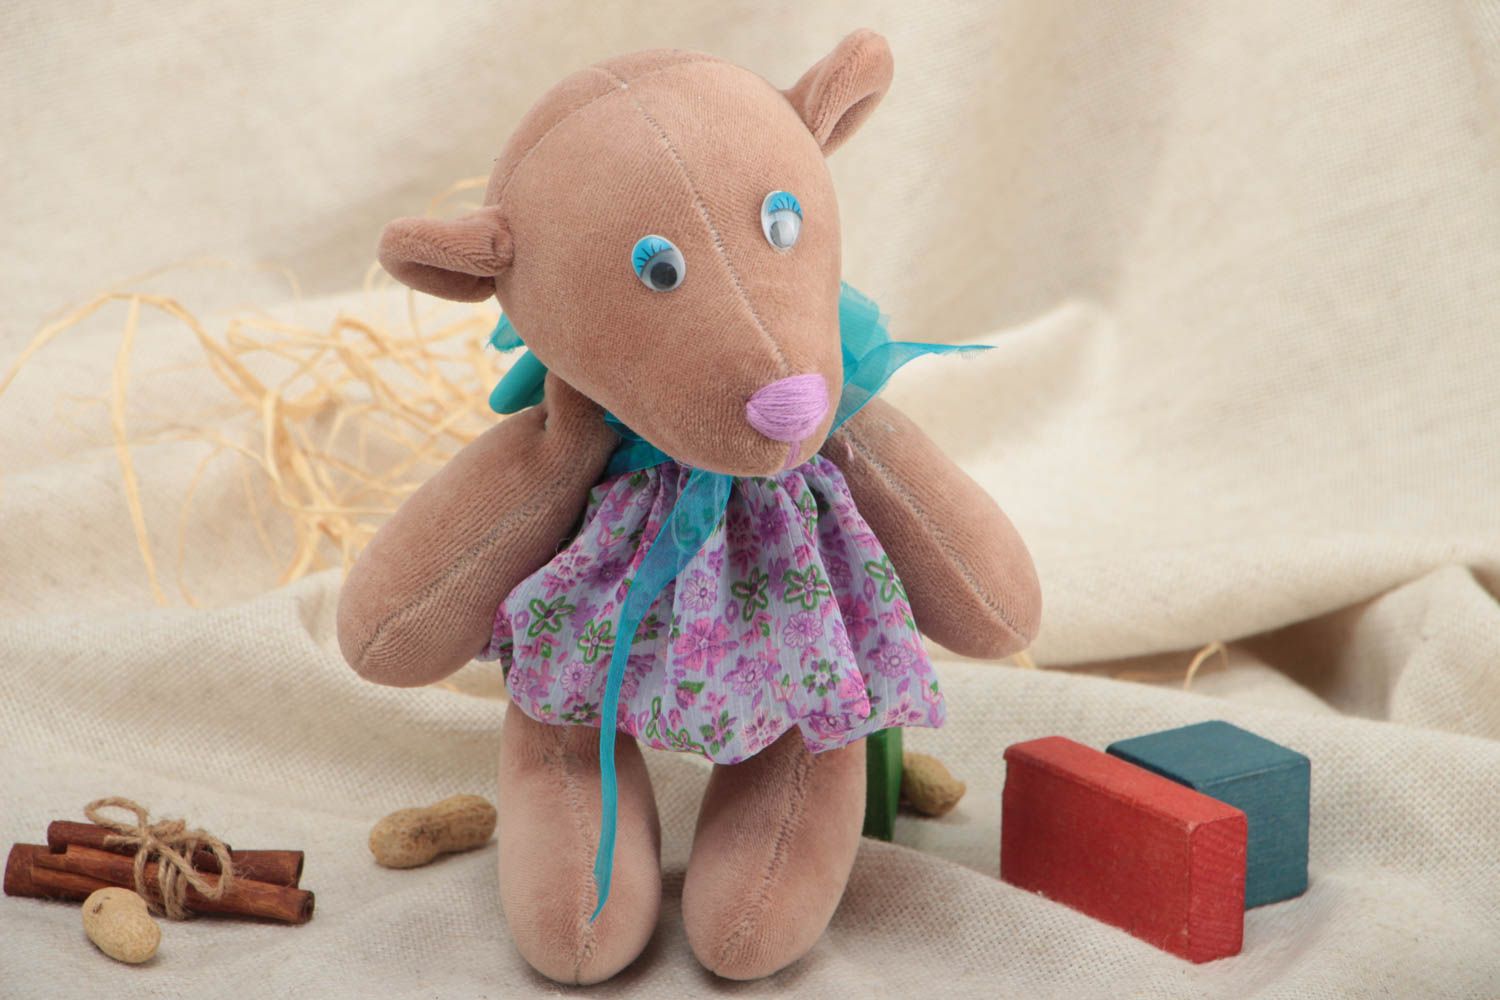 Мягкая игрушка ручной работы в виде мишки в платье небольшая красивая хэнд мейд фото 1